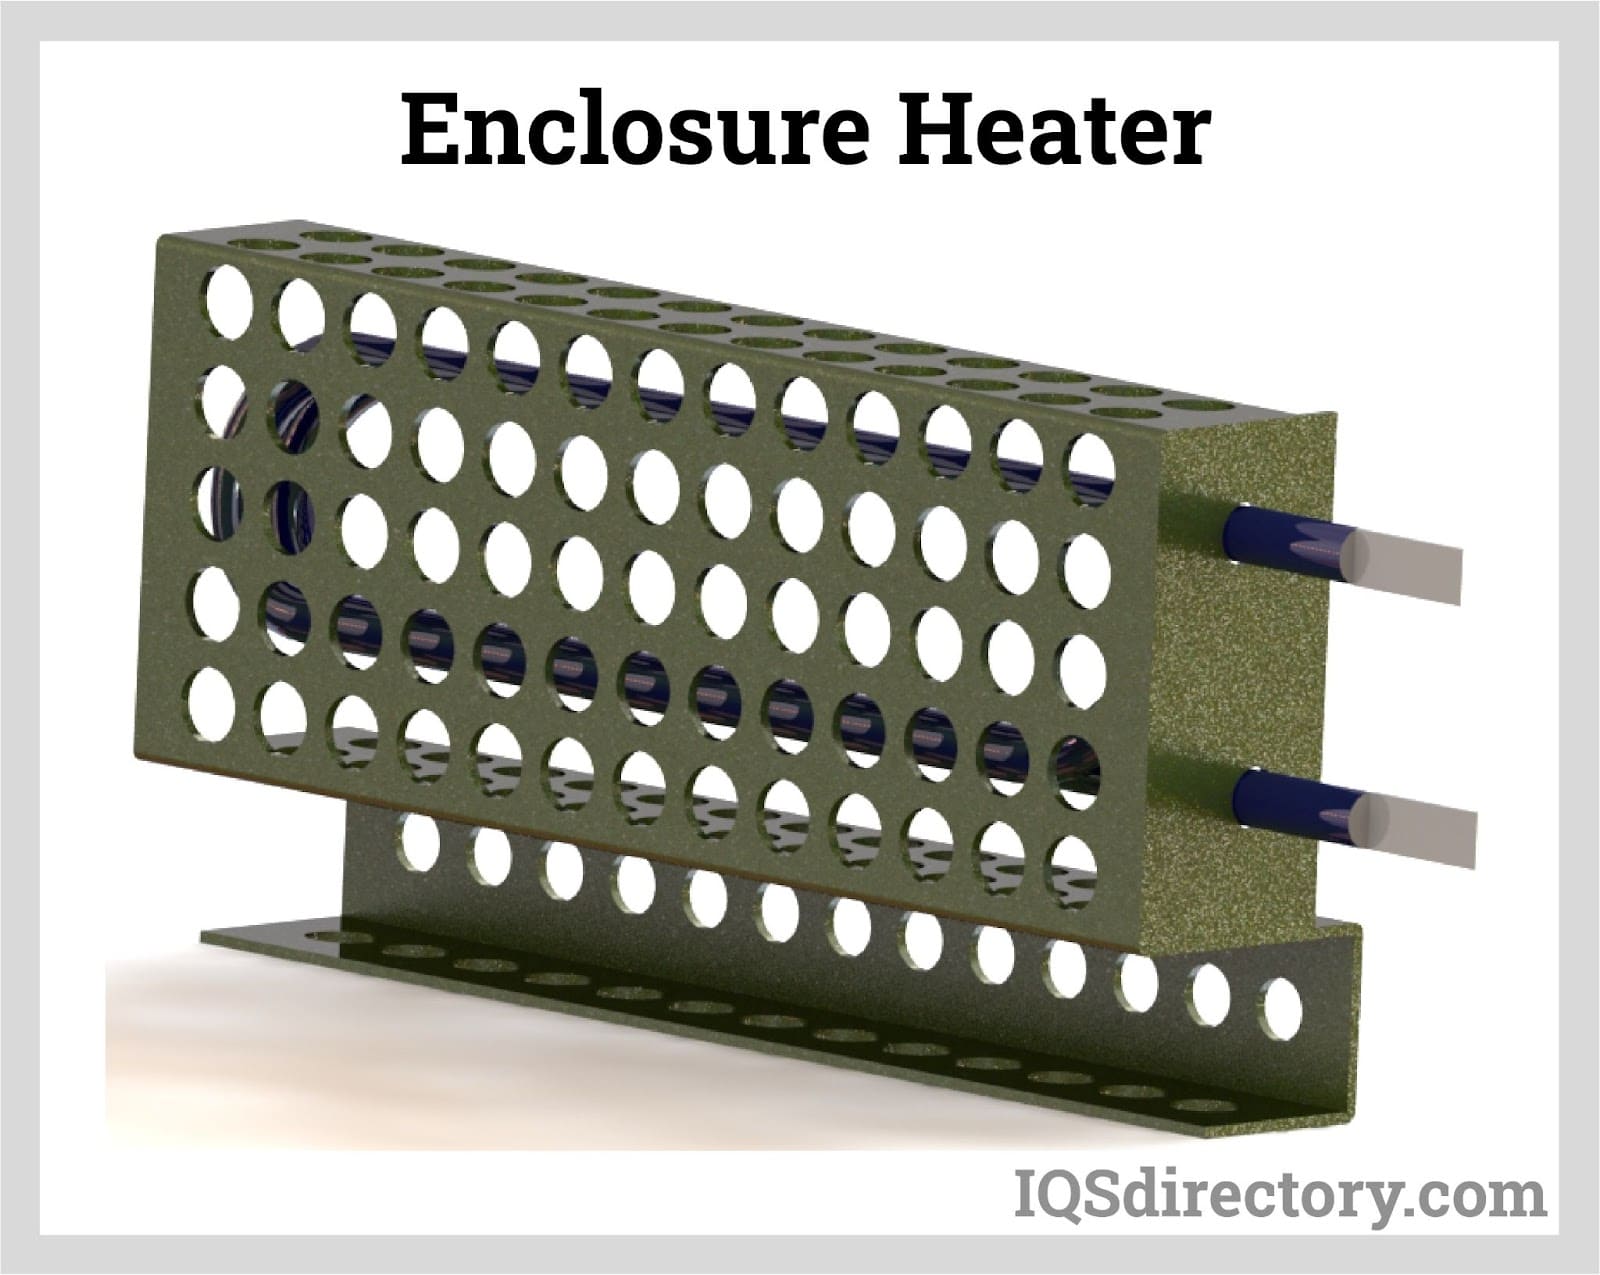 Enclosure Heater